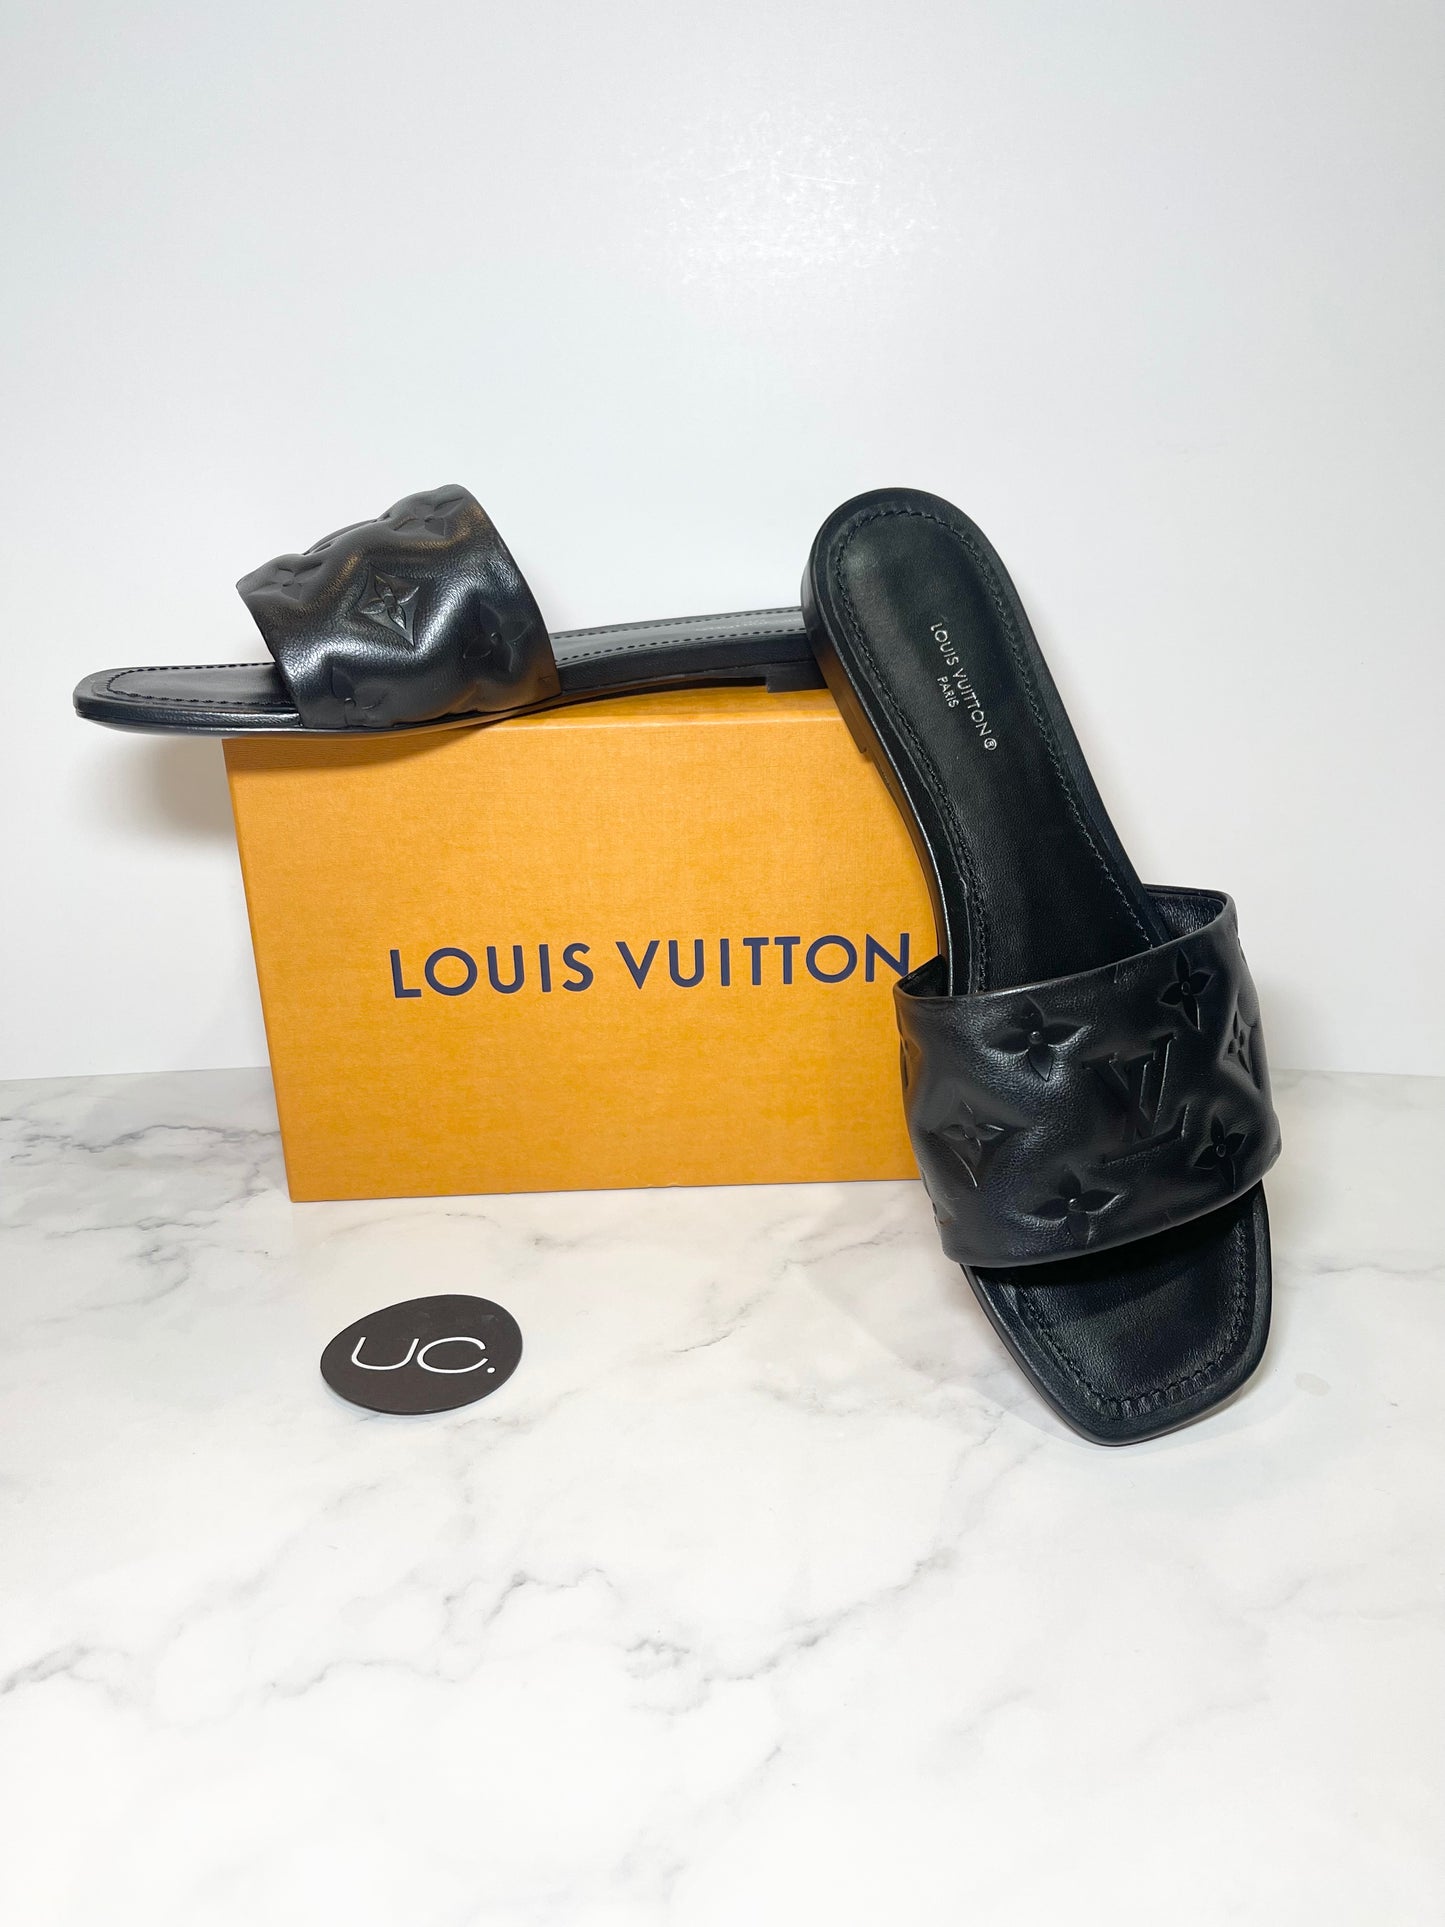 Louis Vuitton Revival Flat Mule Orange. Size 35.0